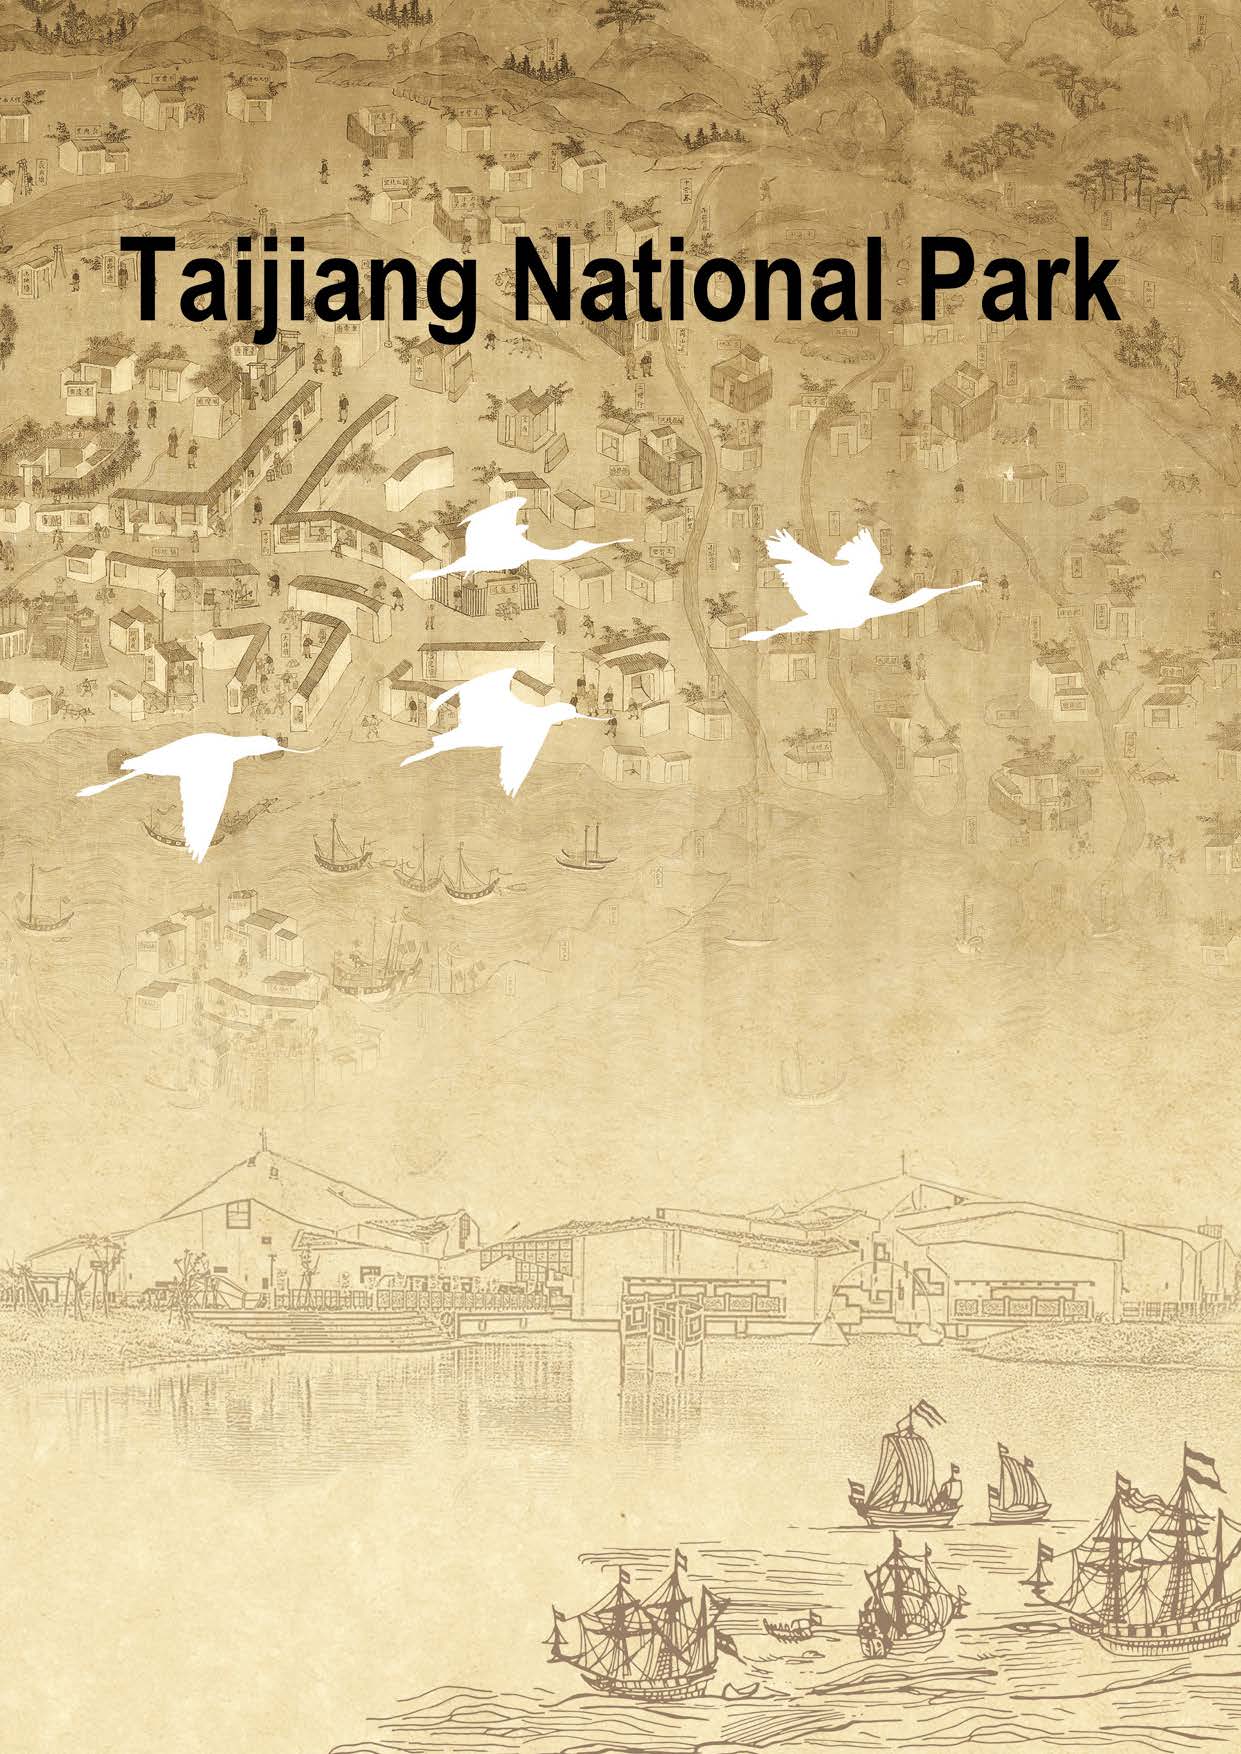 Taijiang National Park